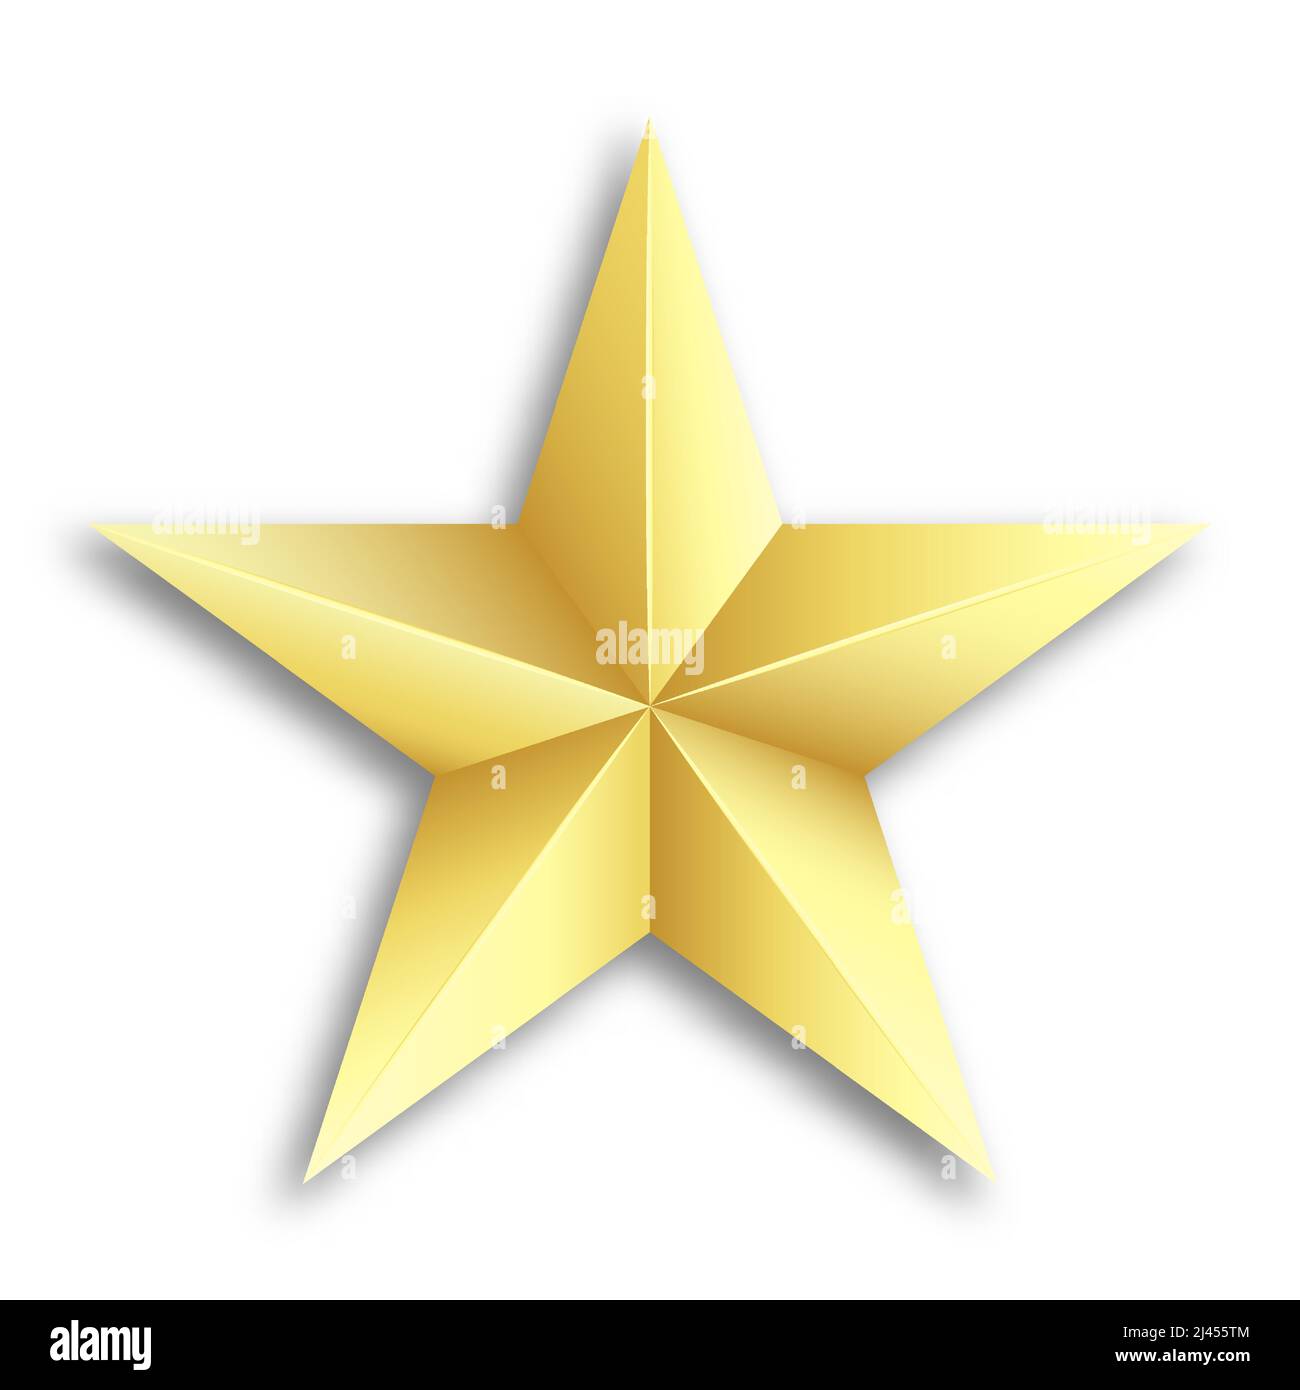 Cinq étoiles pointues d'or. Insigne militaire des forces navales et terrestres. Vecteur réaliste isolé sur fond blanc Illustration de Vecteur